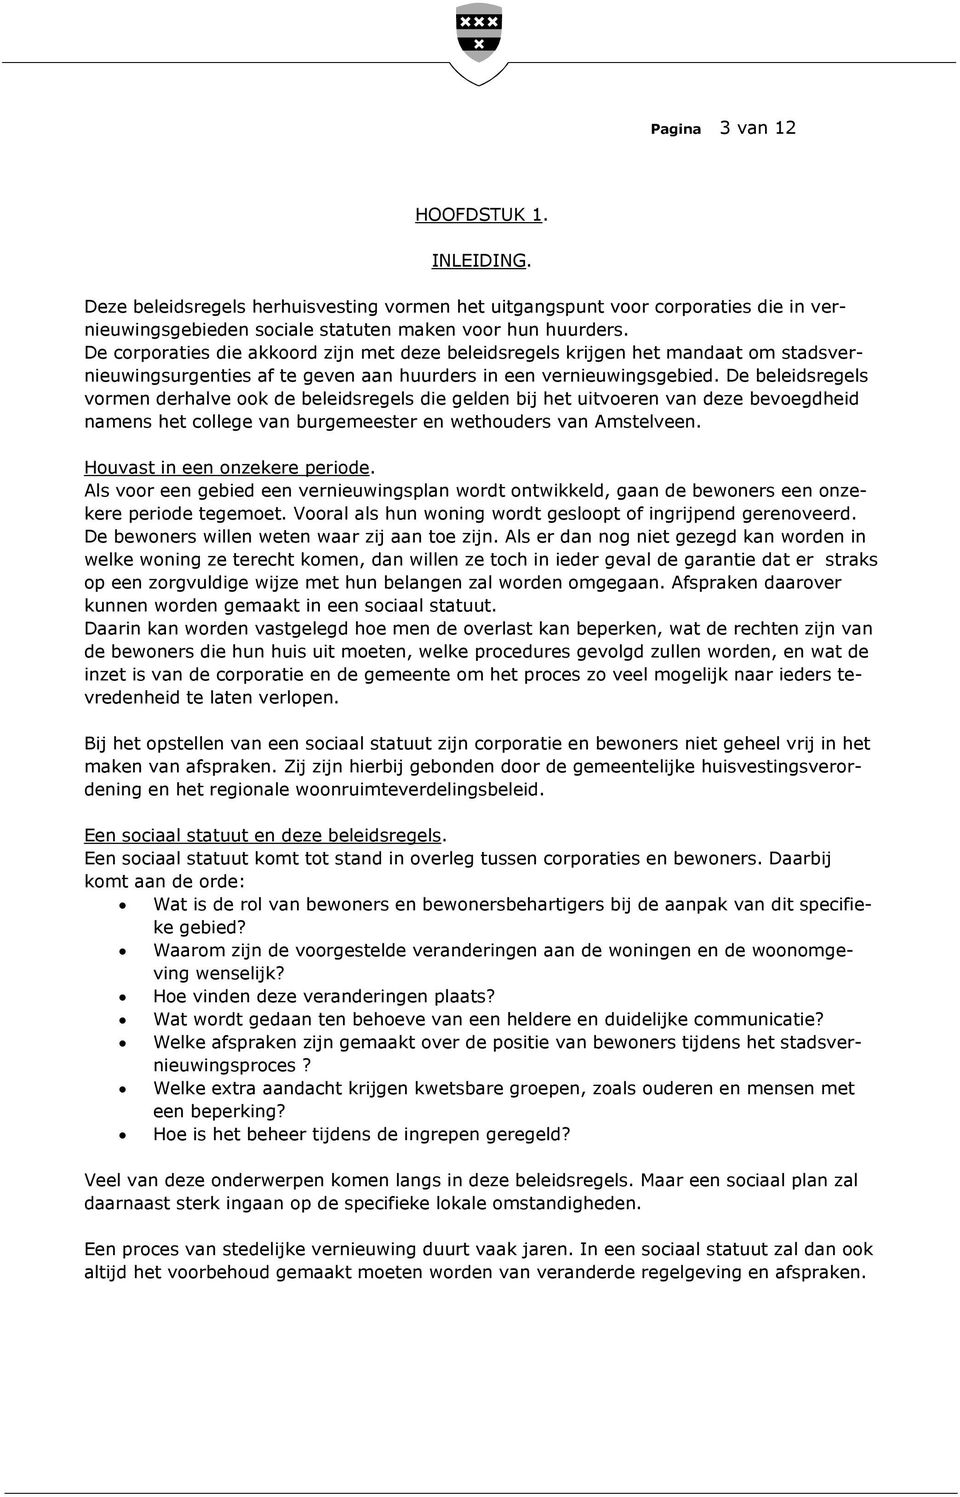 De beleidsregels vormen derhalve ook de beleidsregels die gelden bij het uitvoeren van deze bevoegdheid namens het college van burgemeester en wethouders van Amstelveen.